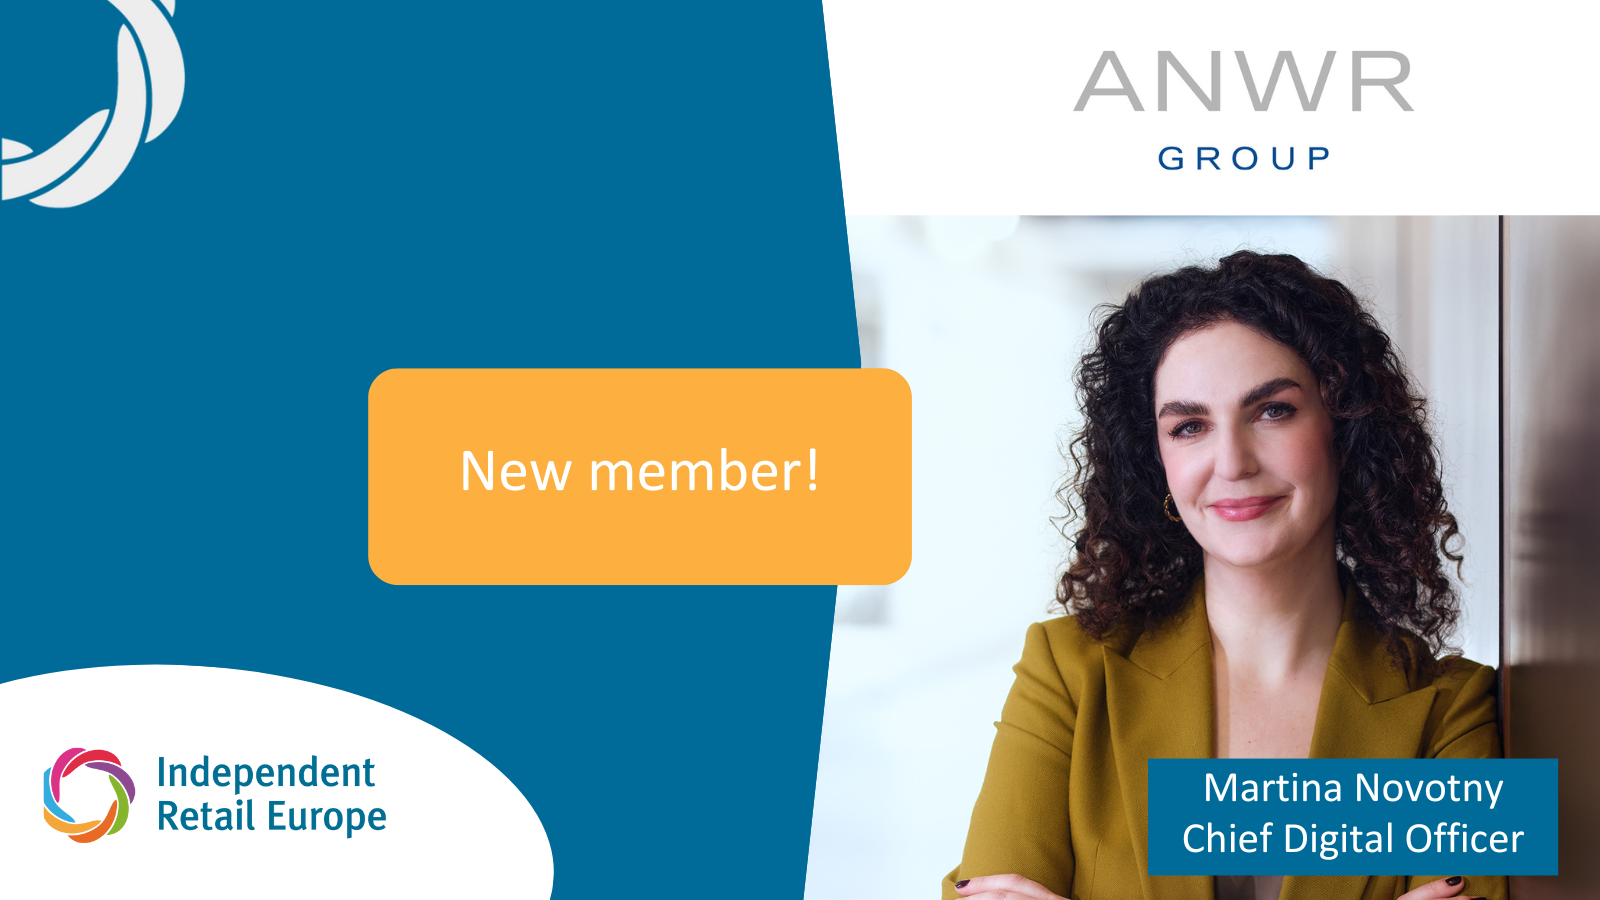 Mit Freude heißen wir ANWR GROUP als neues Mitglied von Independent Retail Europe willkommen!